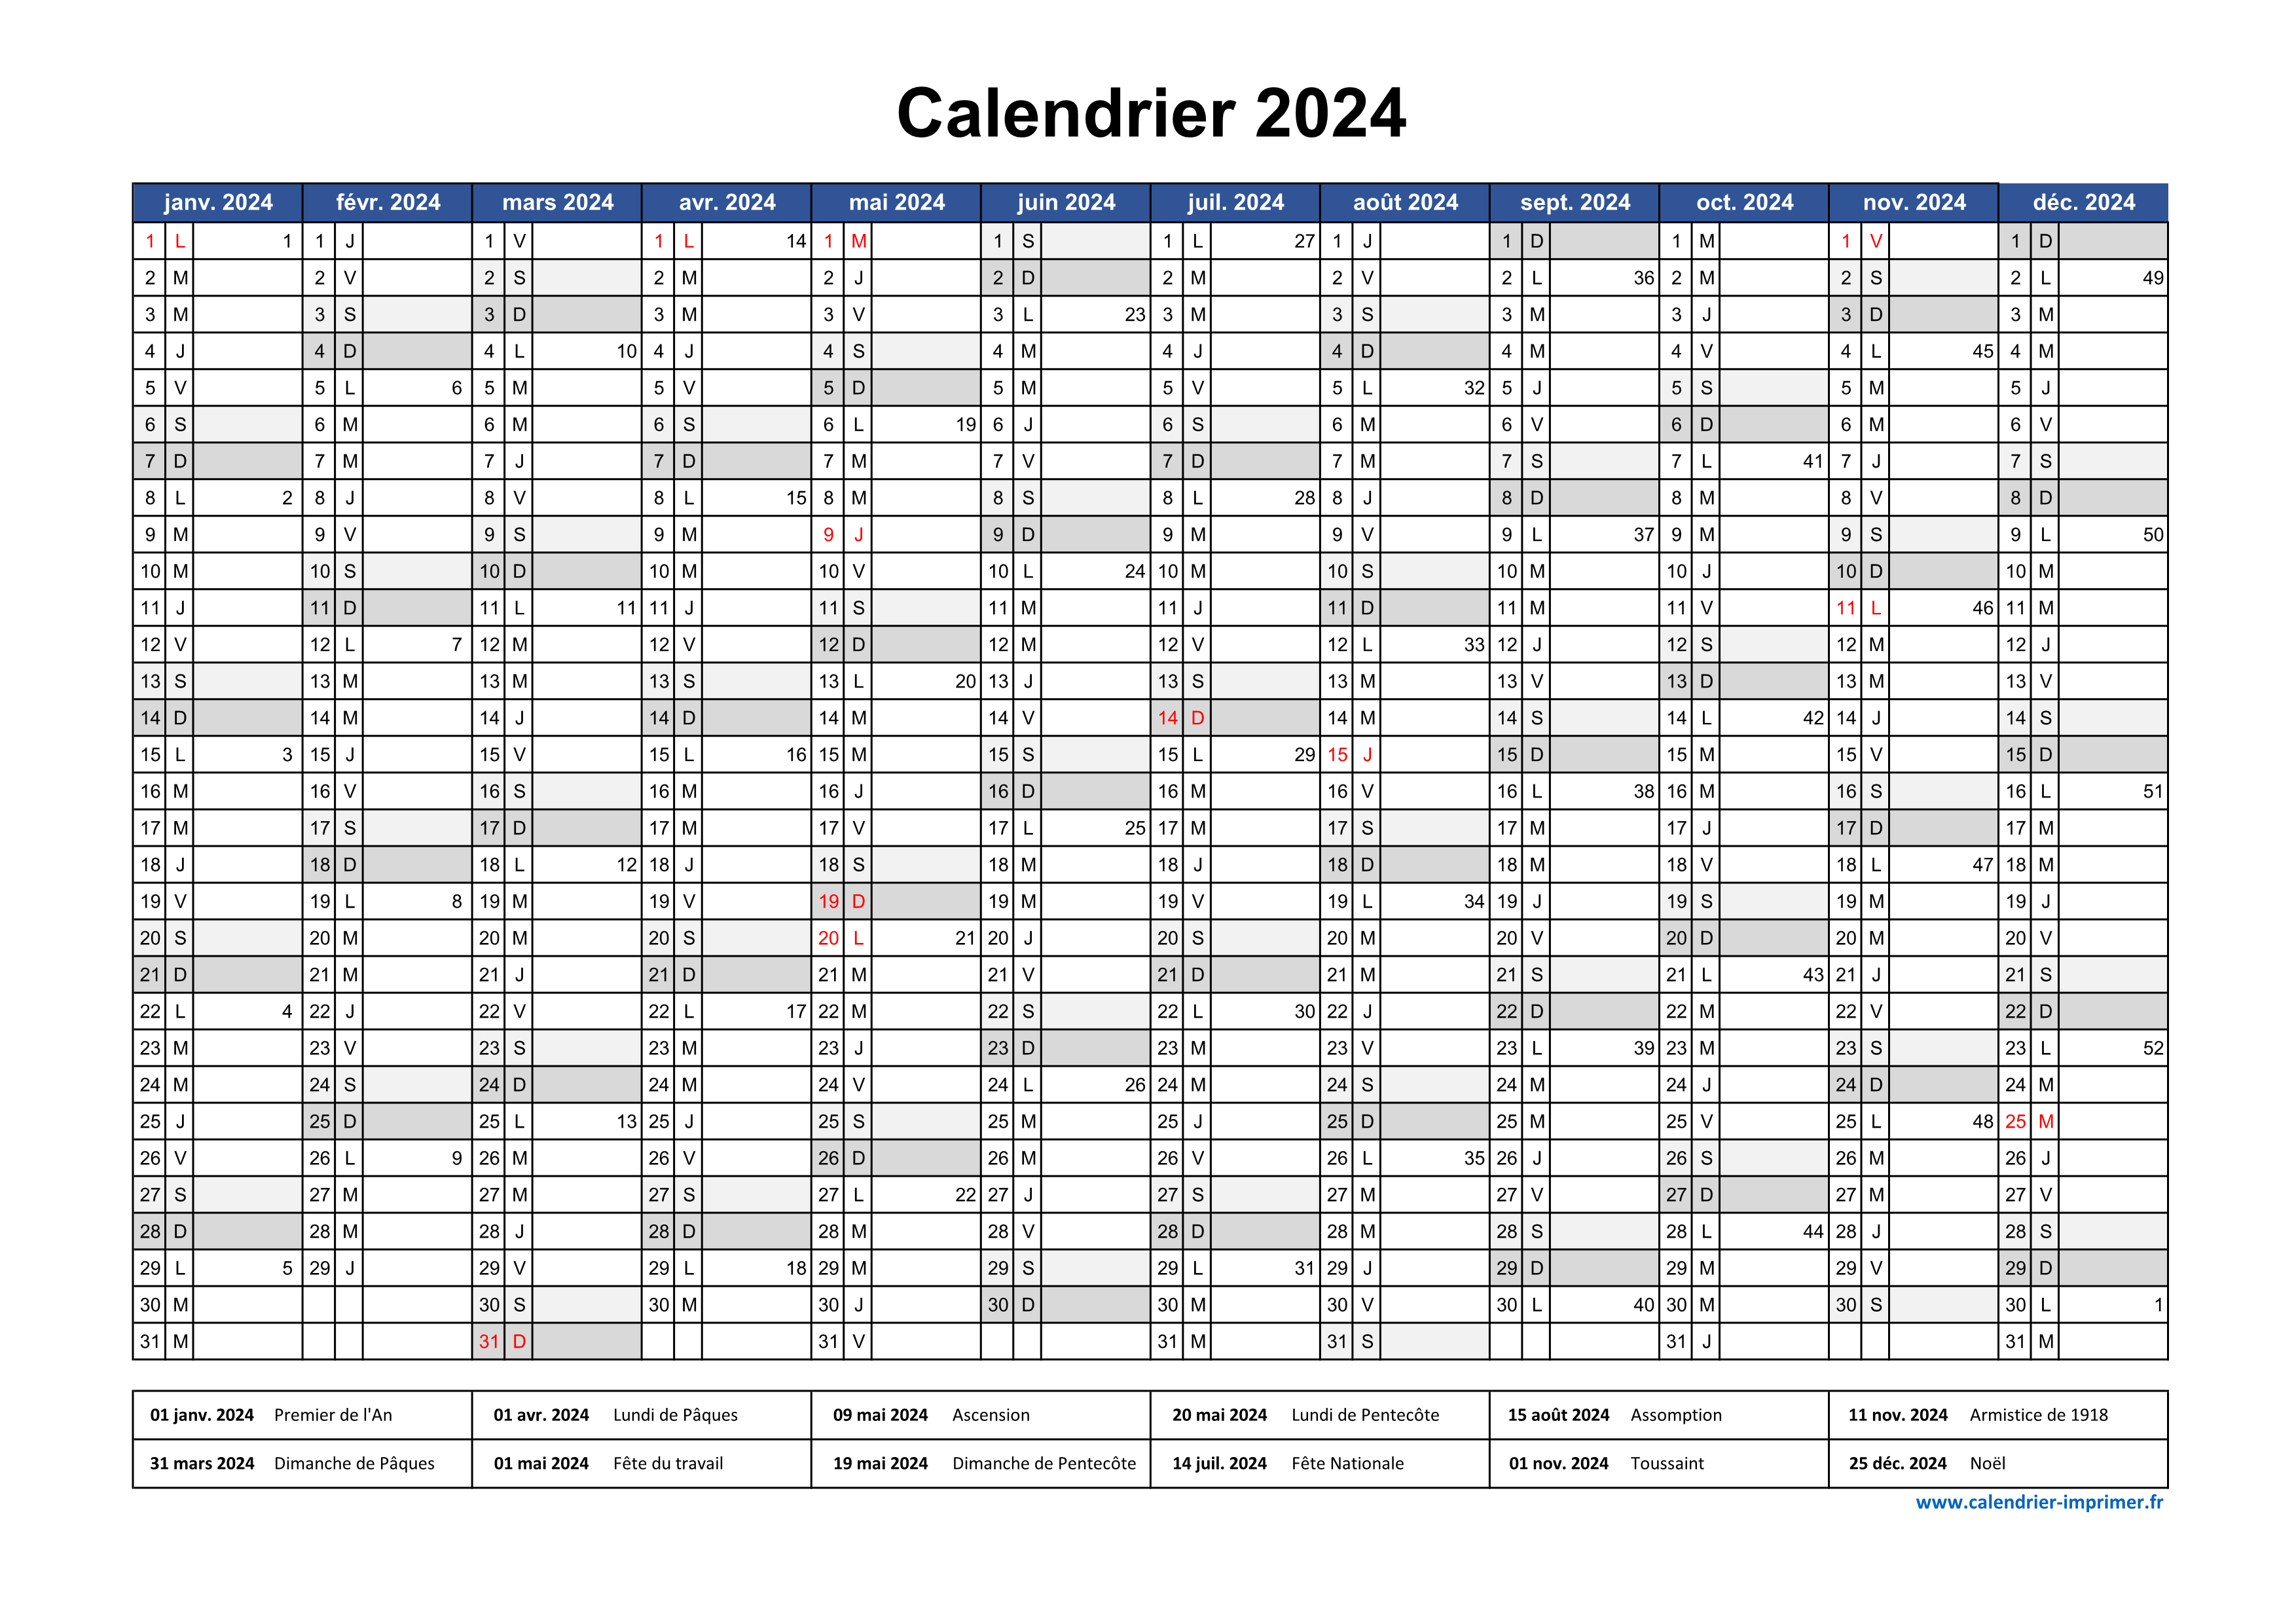 Semaine 2 2024 : dates, calendrier et planning hebdomadaire à imprimer